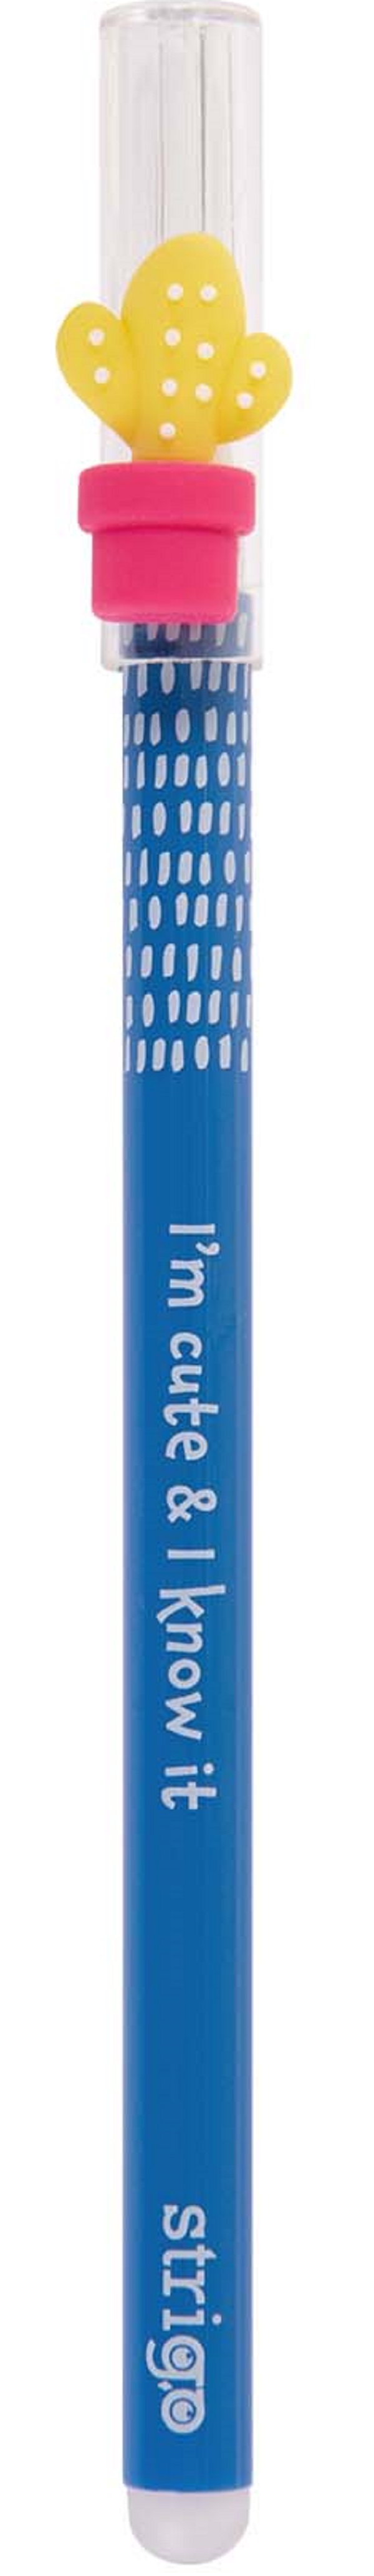 Pix cerneala termosensibila: Cactus albastru